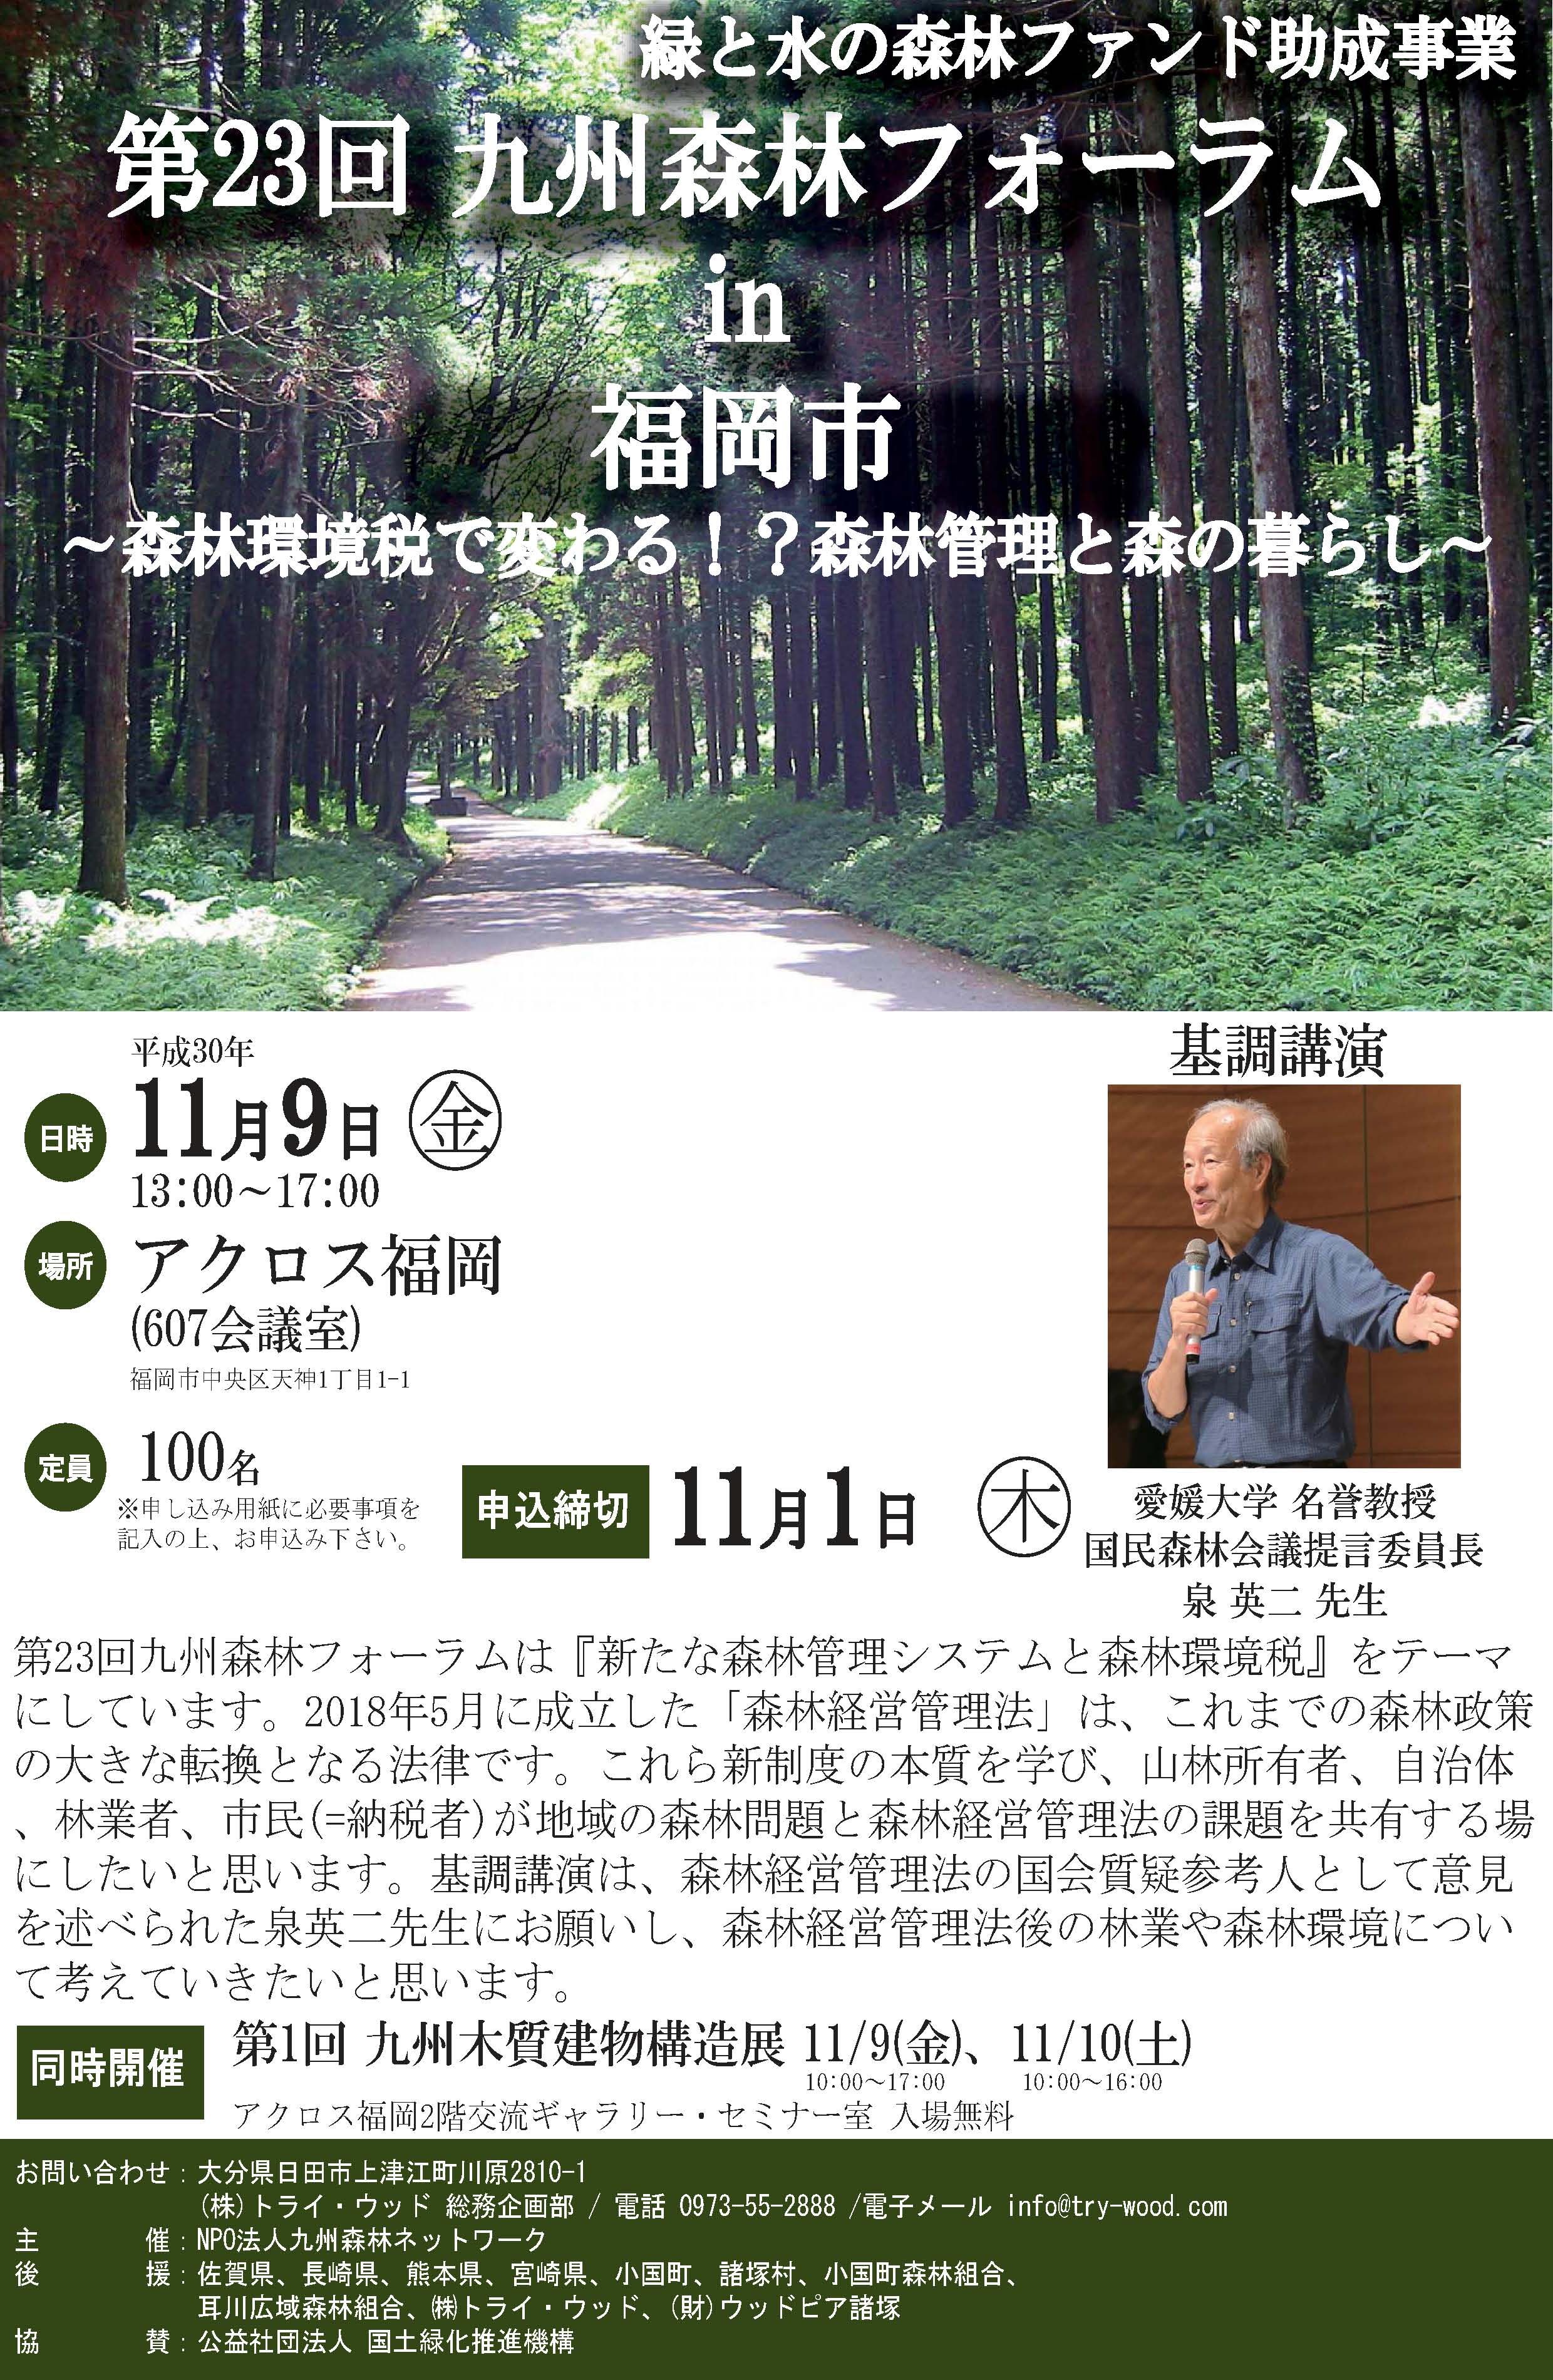 【イベント案内】11月1日第23回九州森林ネットワーク